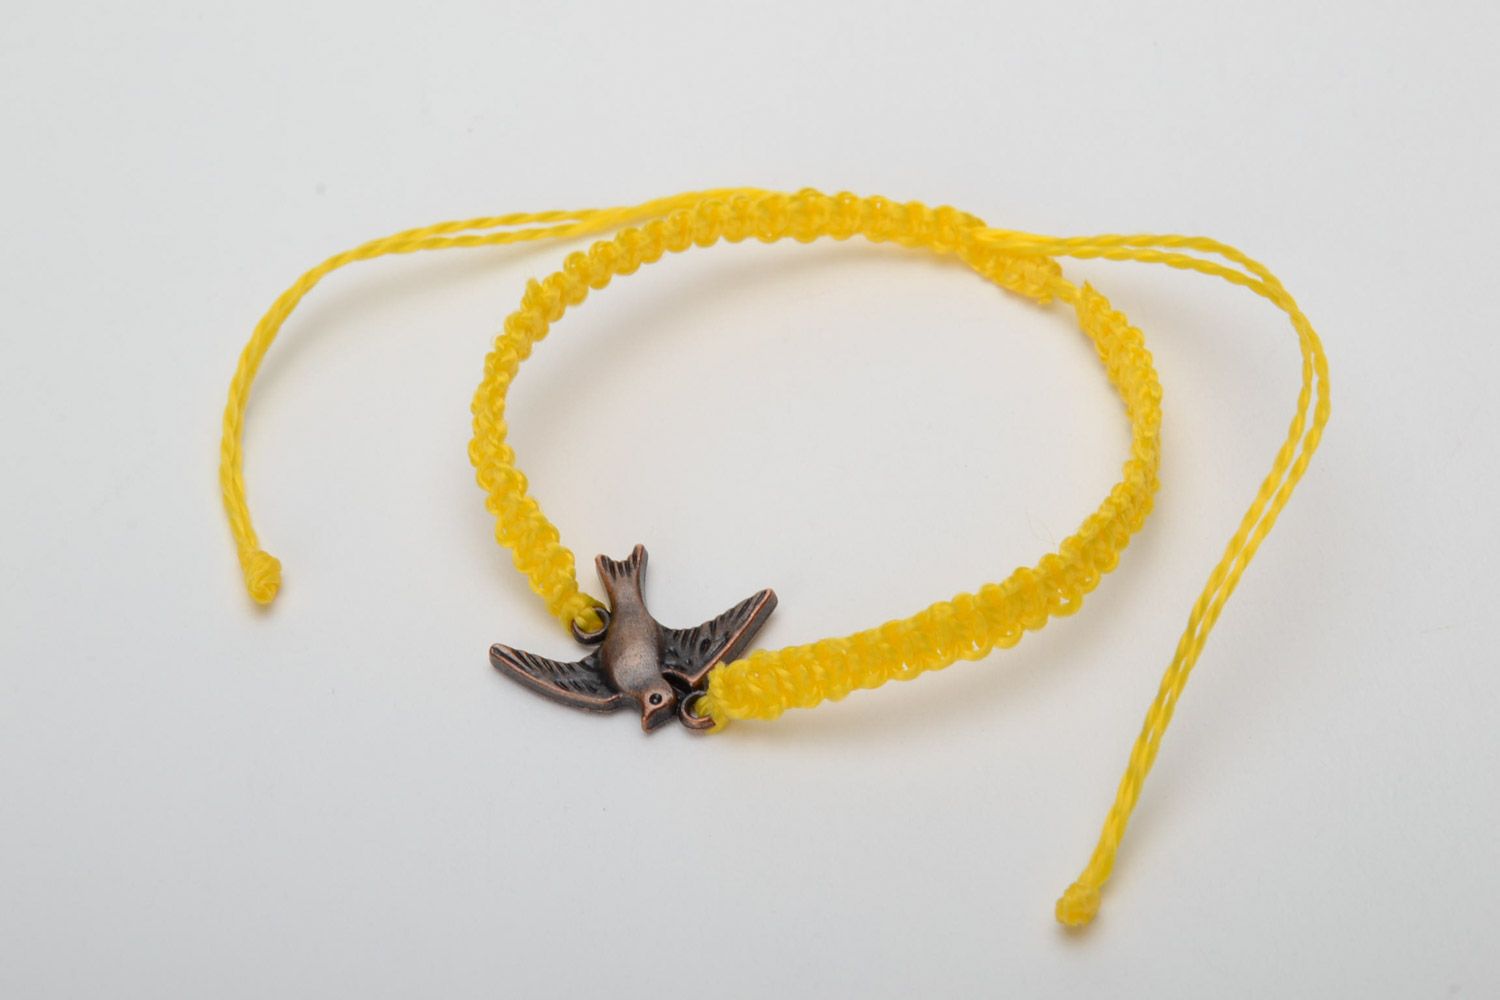 Regulierbares handmade Armband aus Fäden mit Anhänger Vogel in Makramee Technik foto 3